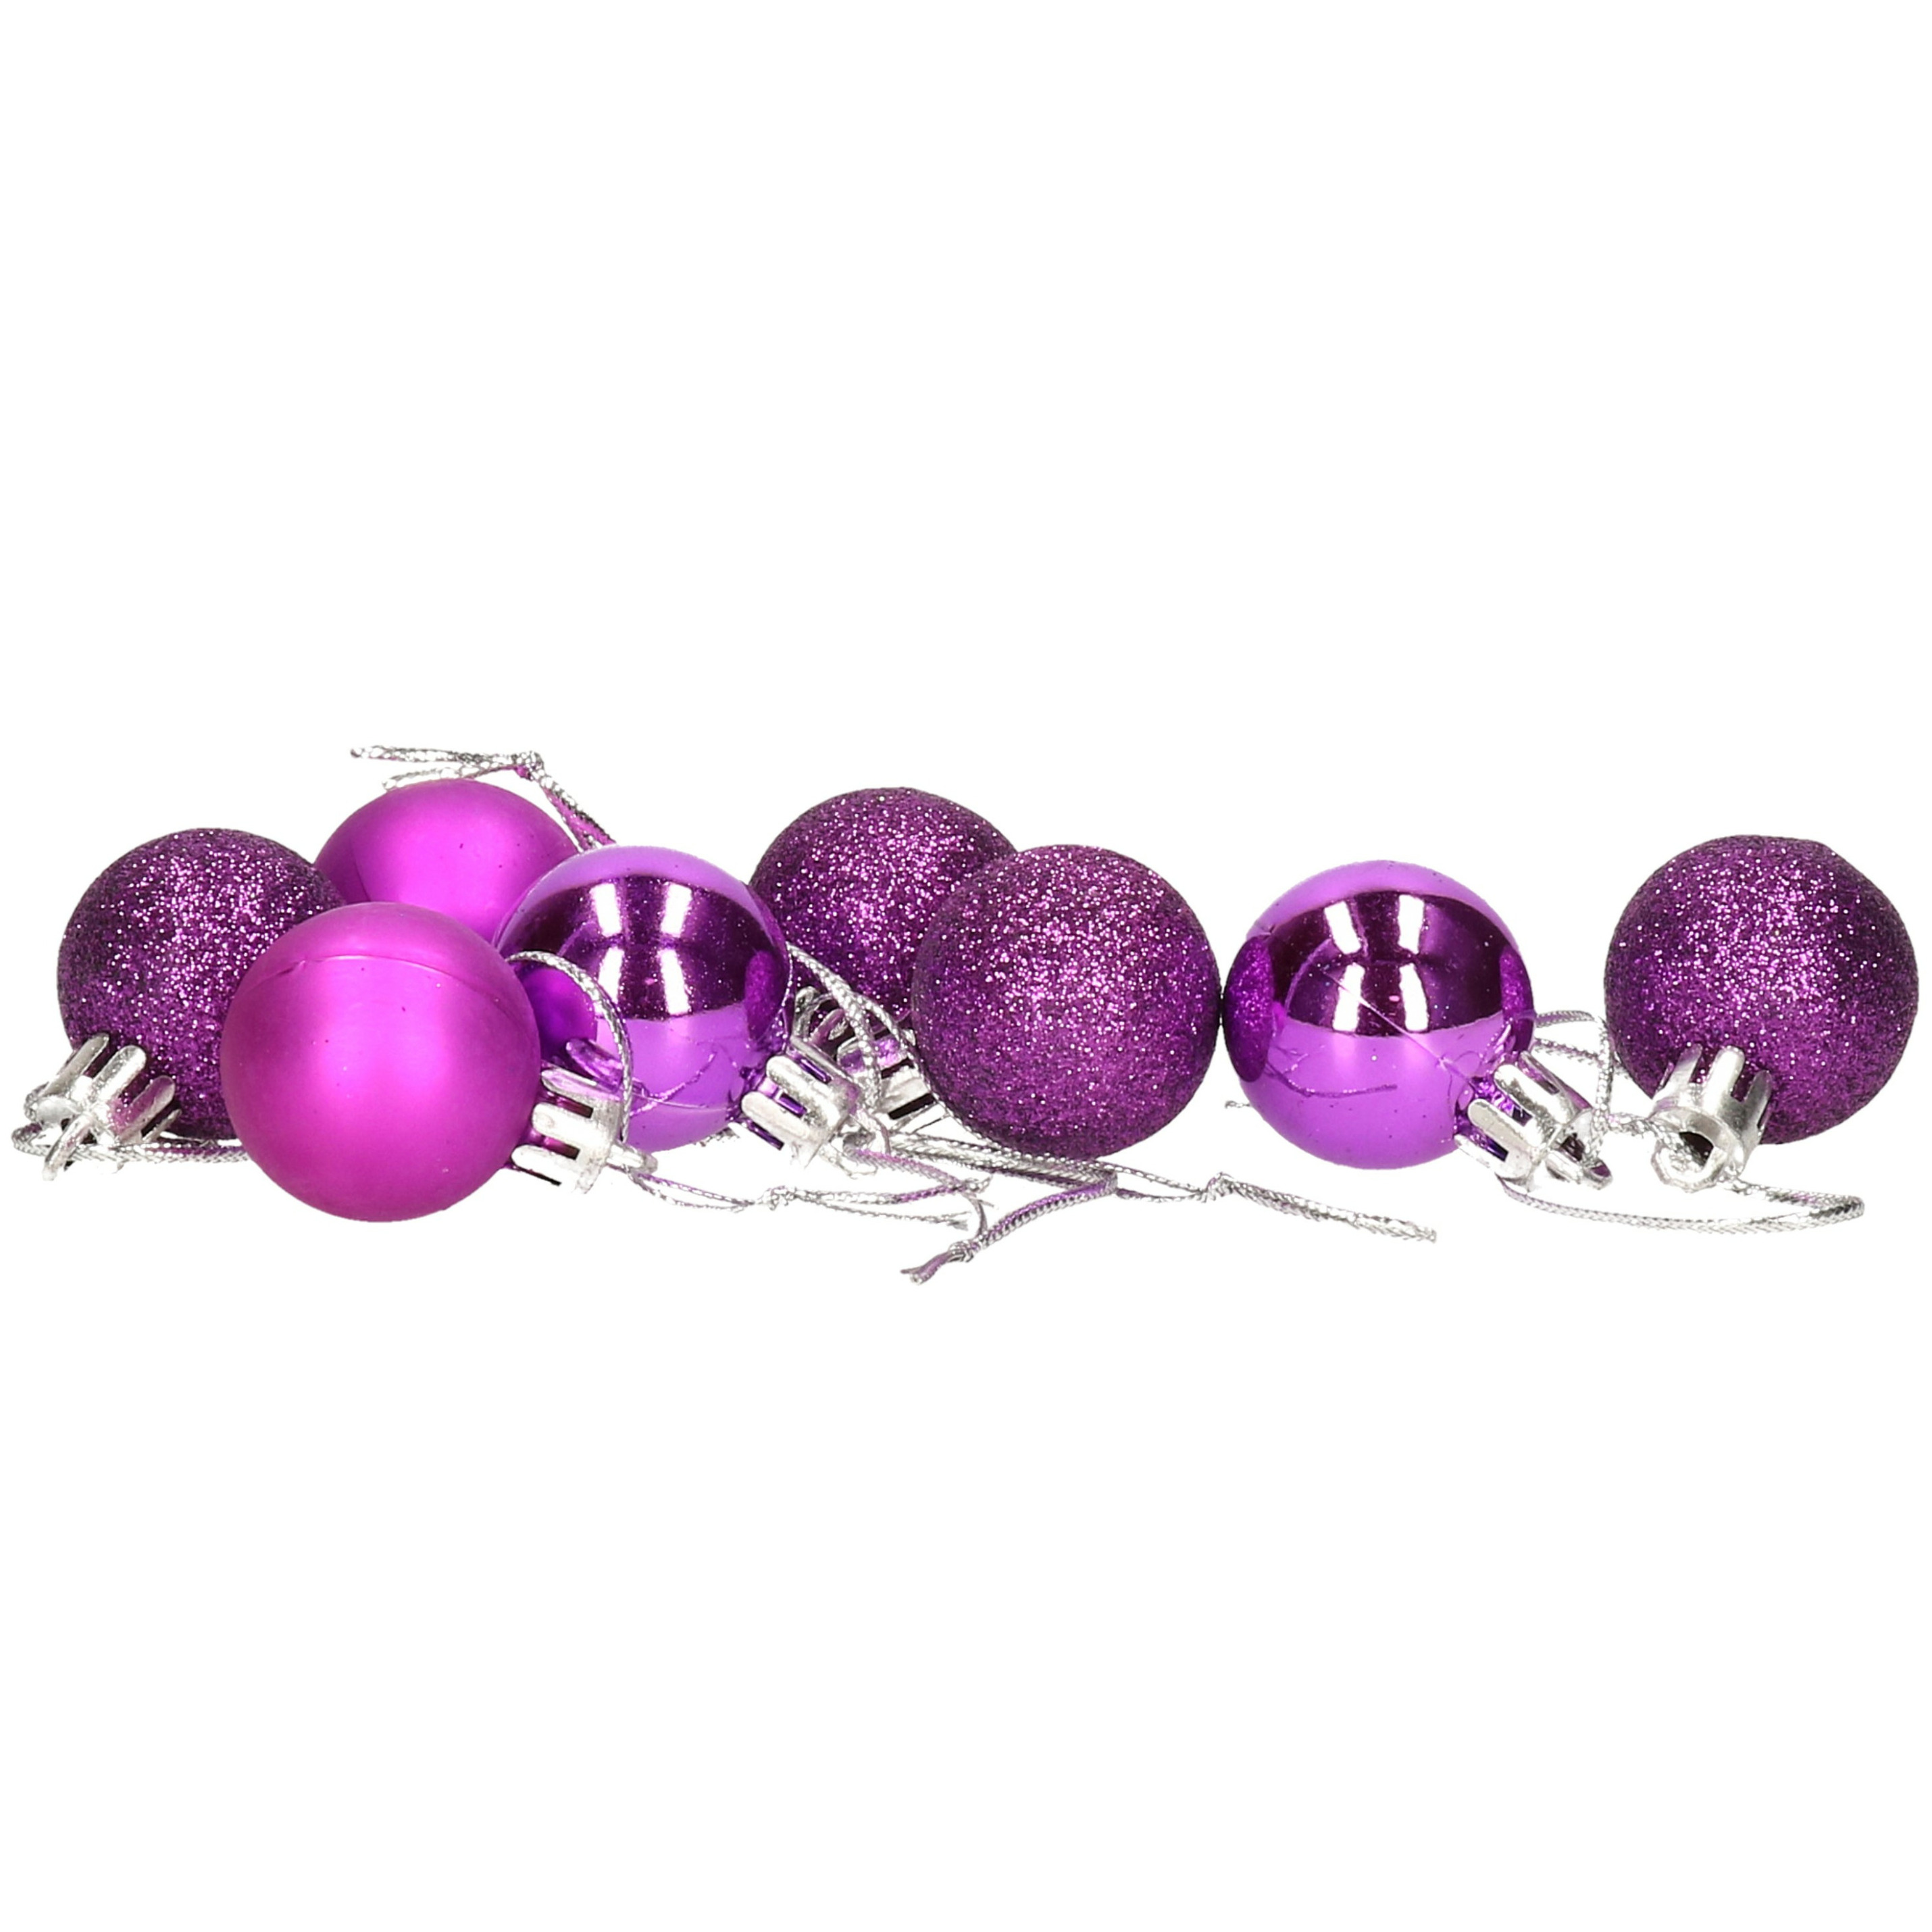 8x stuks kerstballen paars mix van mat-glans-glitter kunststof 3 cm